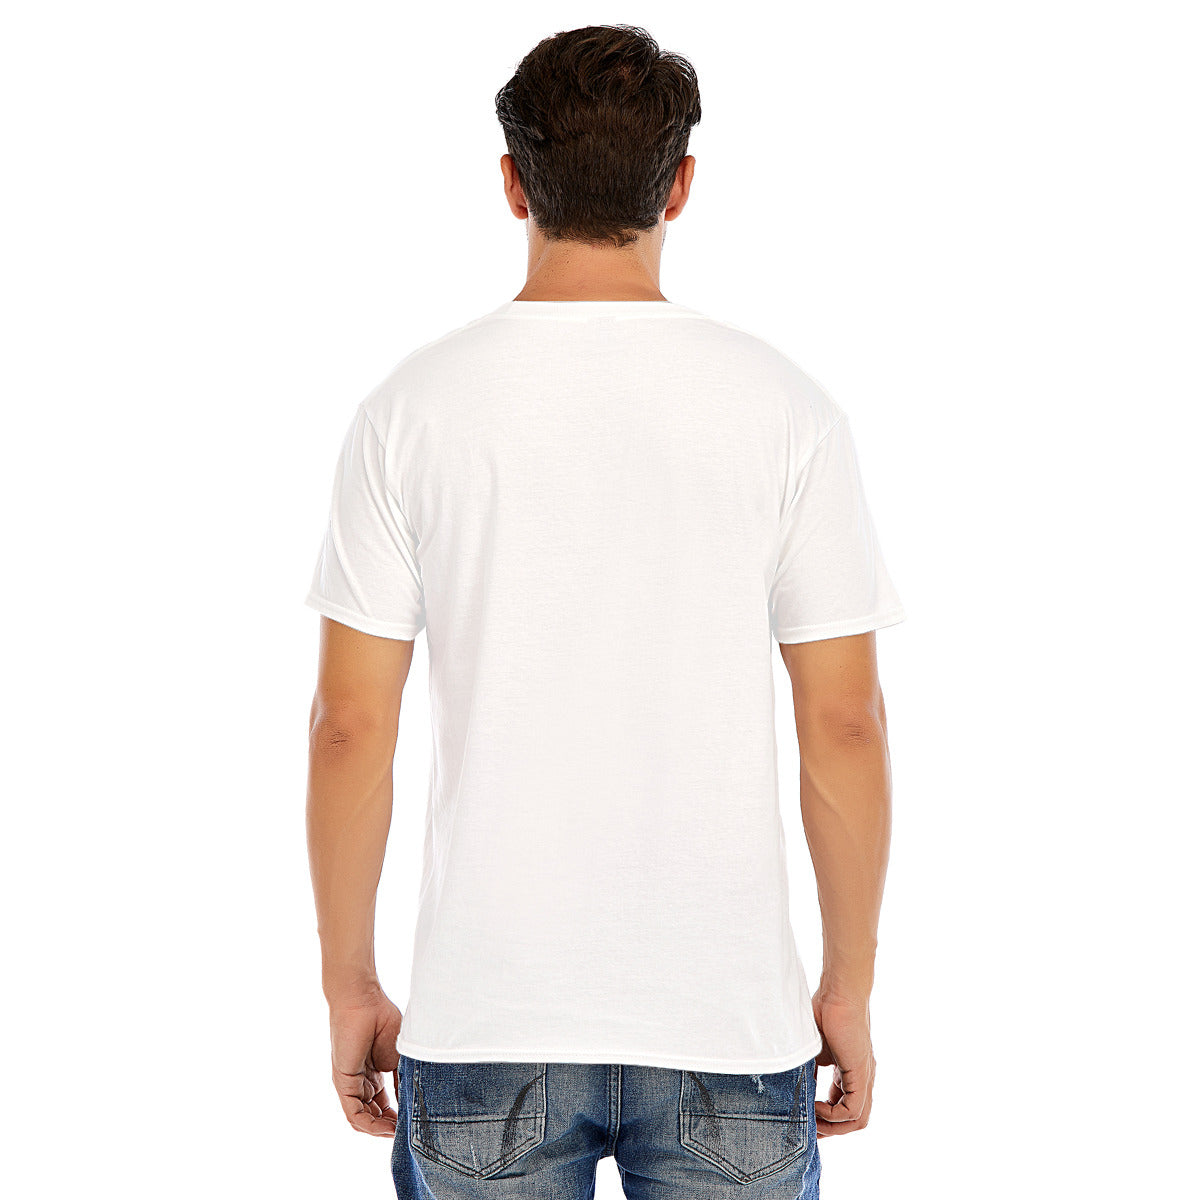 Cleo 103 -- Unisex O-neck Short Sleeve T-shirt